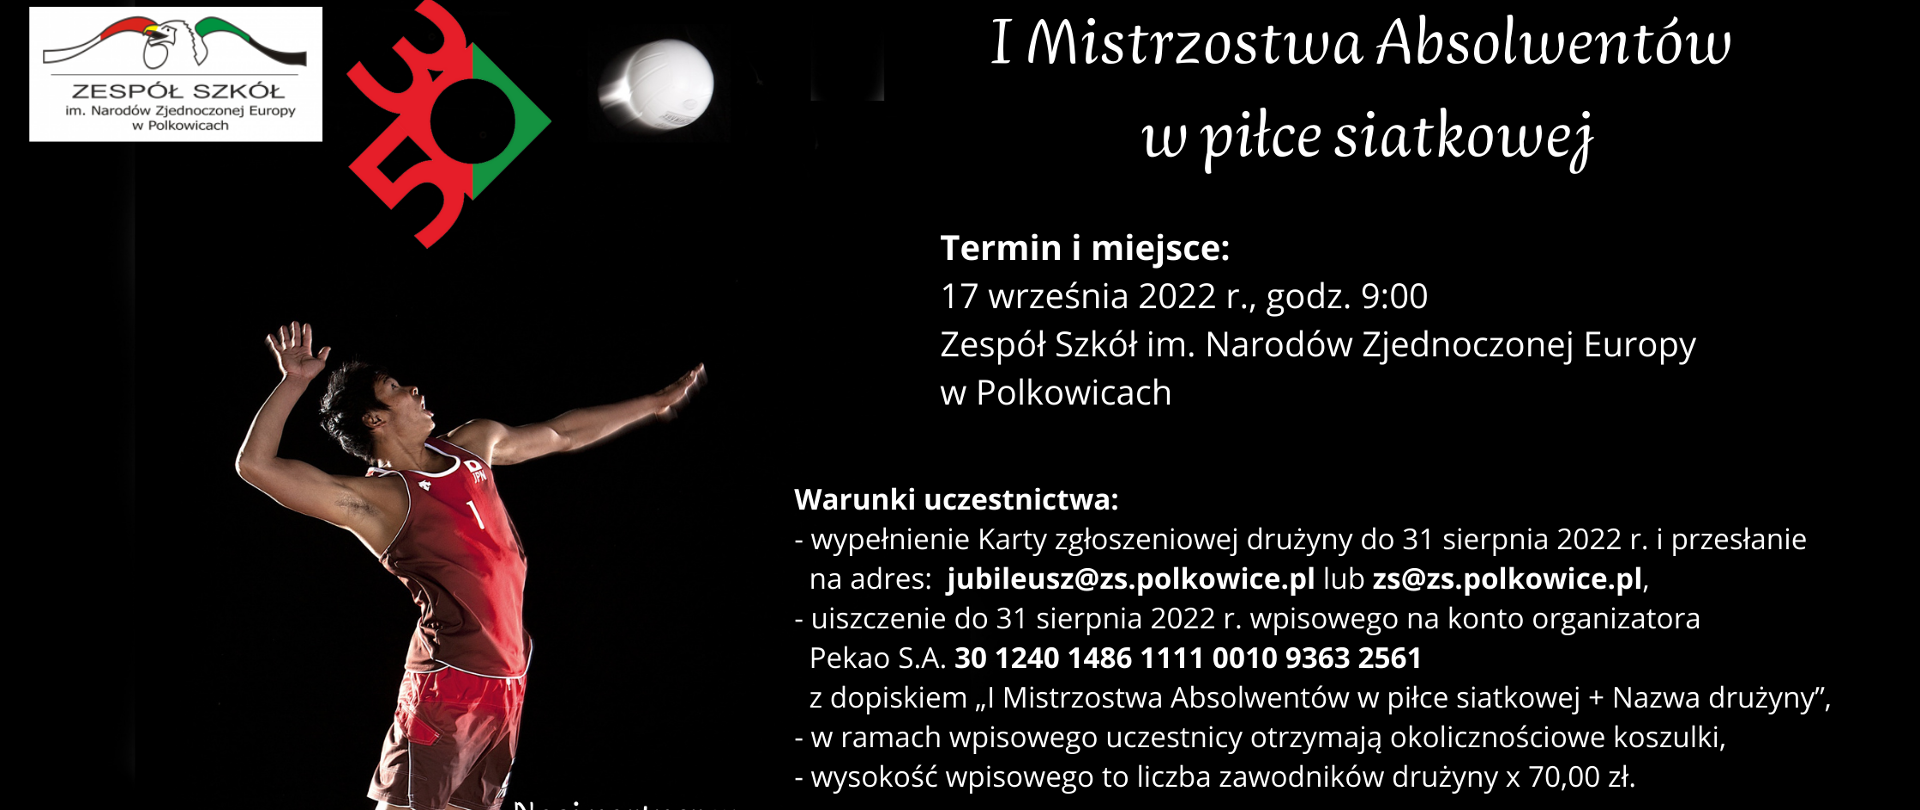 Plakat z informacjami o pierwszych mistrzostwach absolwentów Zespołu Szkół w Polkowicach w piłce siatkowej